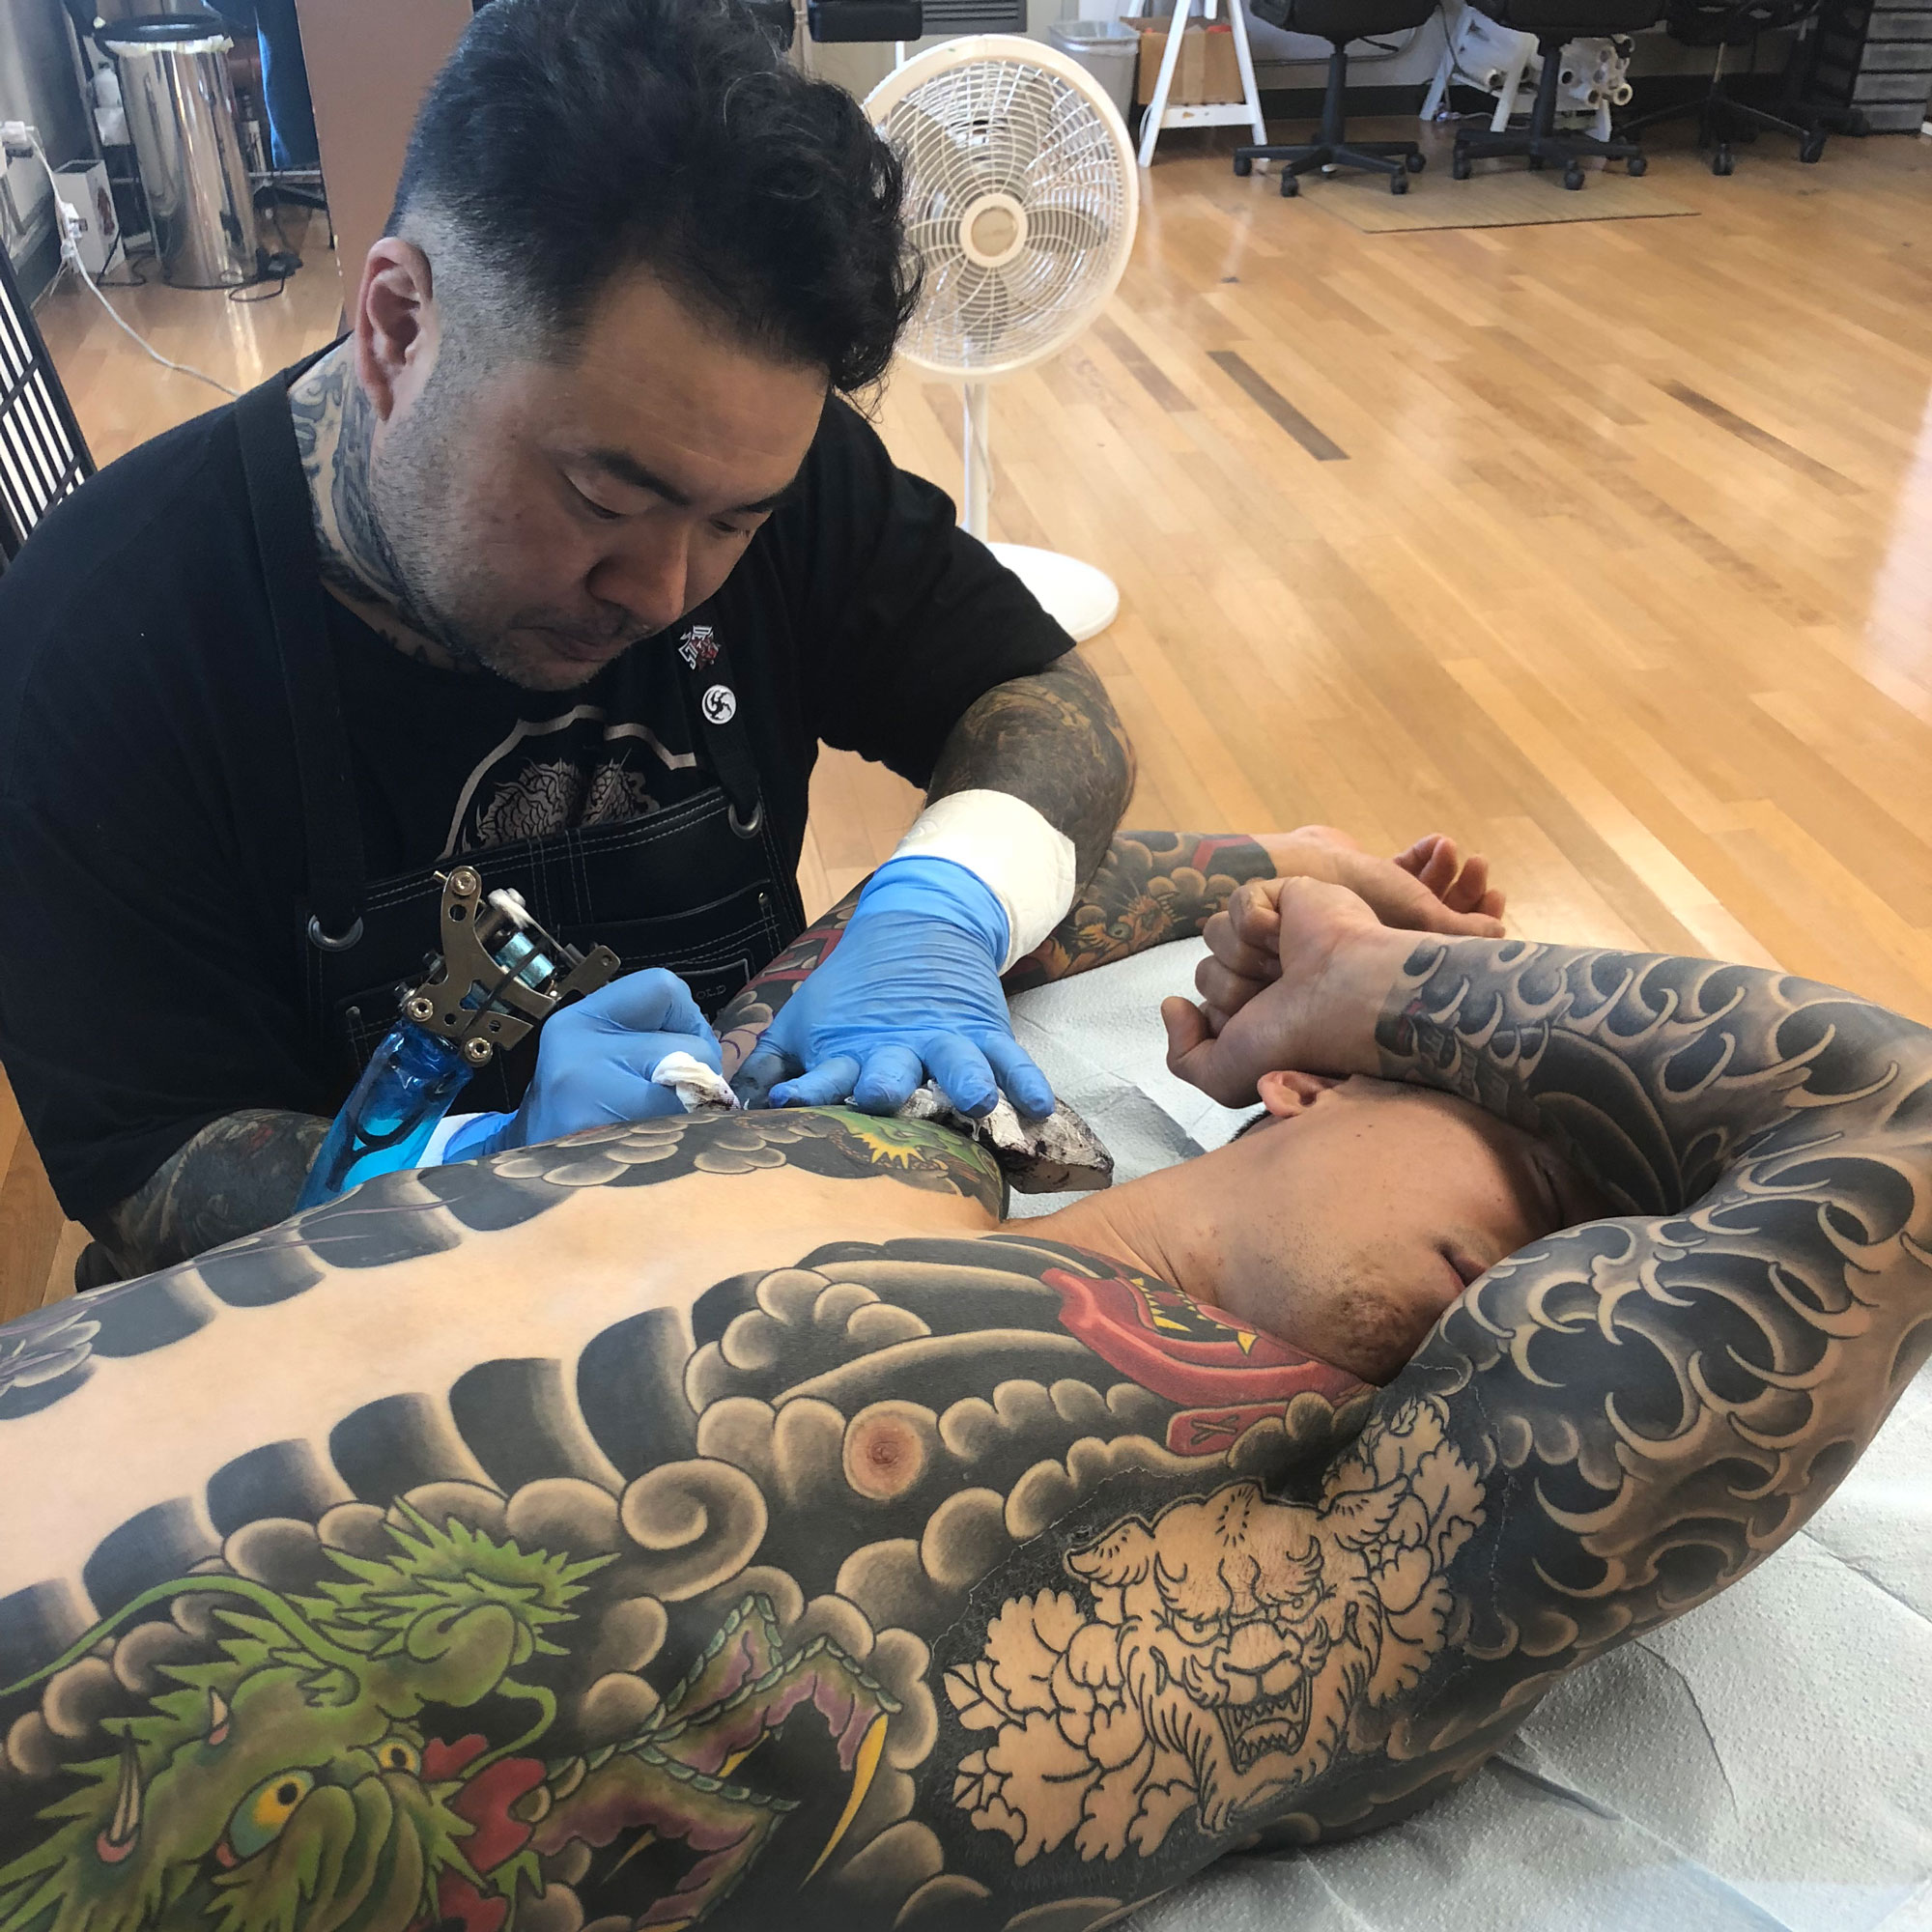 Takahiro Kitamura at work on a tattoo